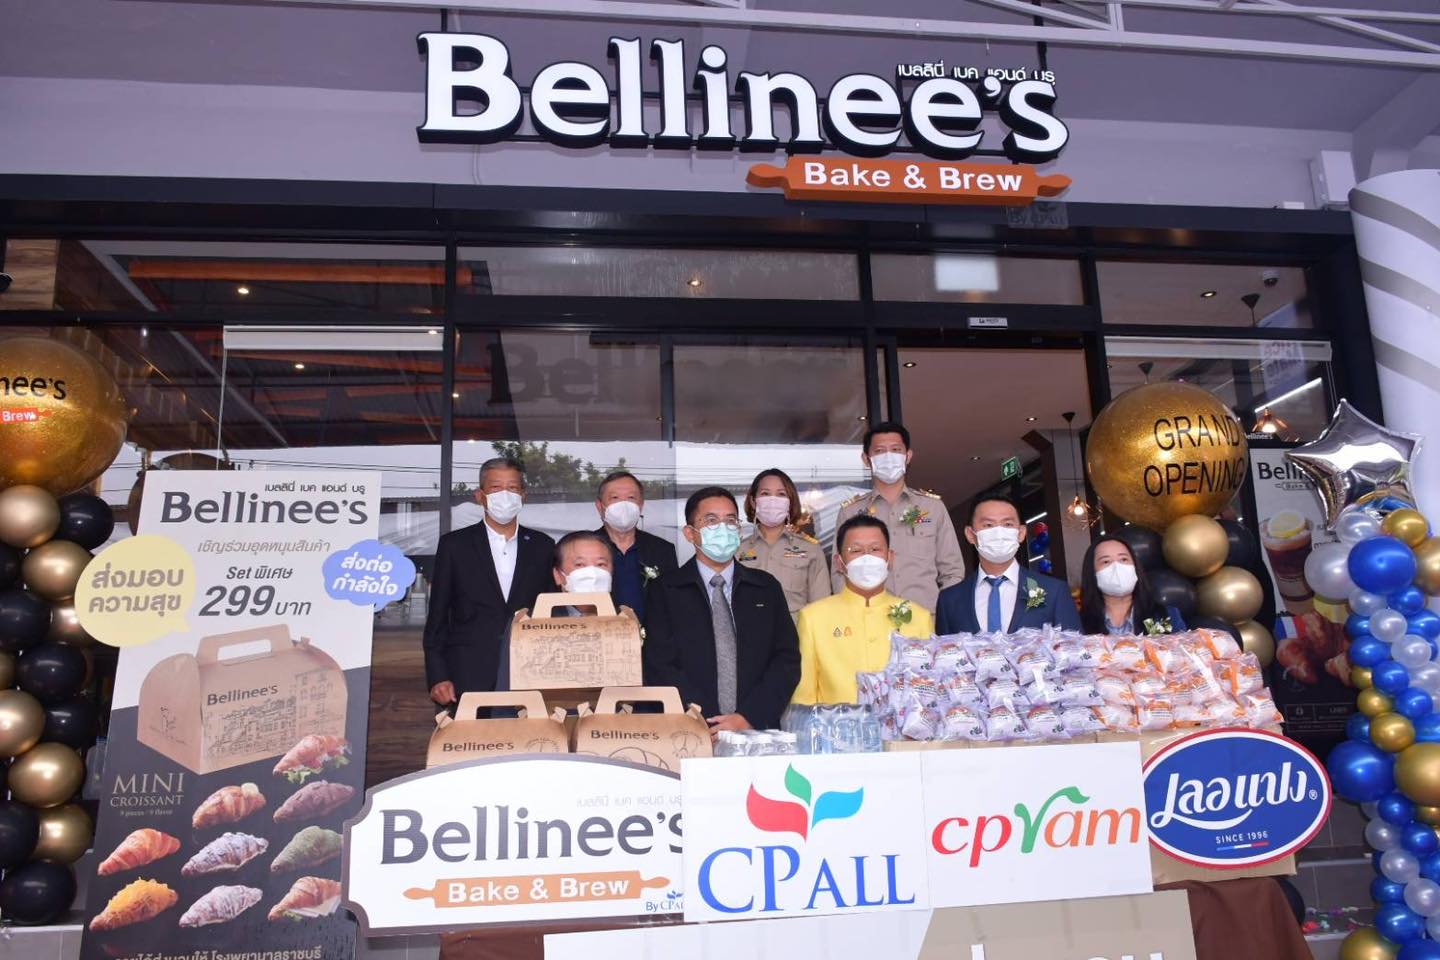 คณะผู้บริหารและเจ้าหน้าที่โรงพยาบาลราชบุรี Bellinee's Bake & Brew สาขาถนนศรีสุริยวงศ์ ราชบุรี ภายใต้การบริหาร บริษัท ซีพี ออลล์ จำกัด (มหาชน) เนื่องในวันเปิดร้าน grand opening มอบเงินและสินค้าเพื่อสนับสนุนบุคลากรทางการแพทย์